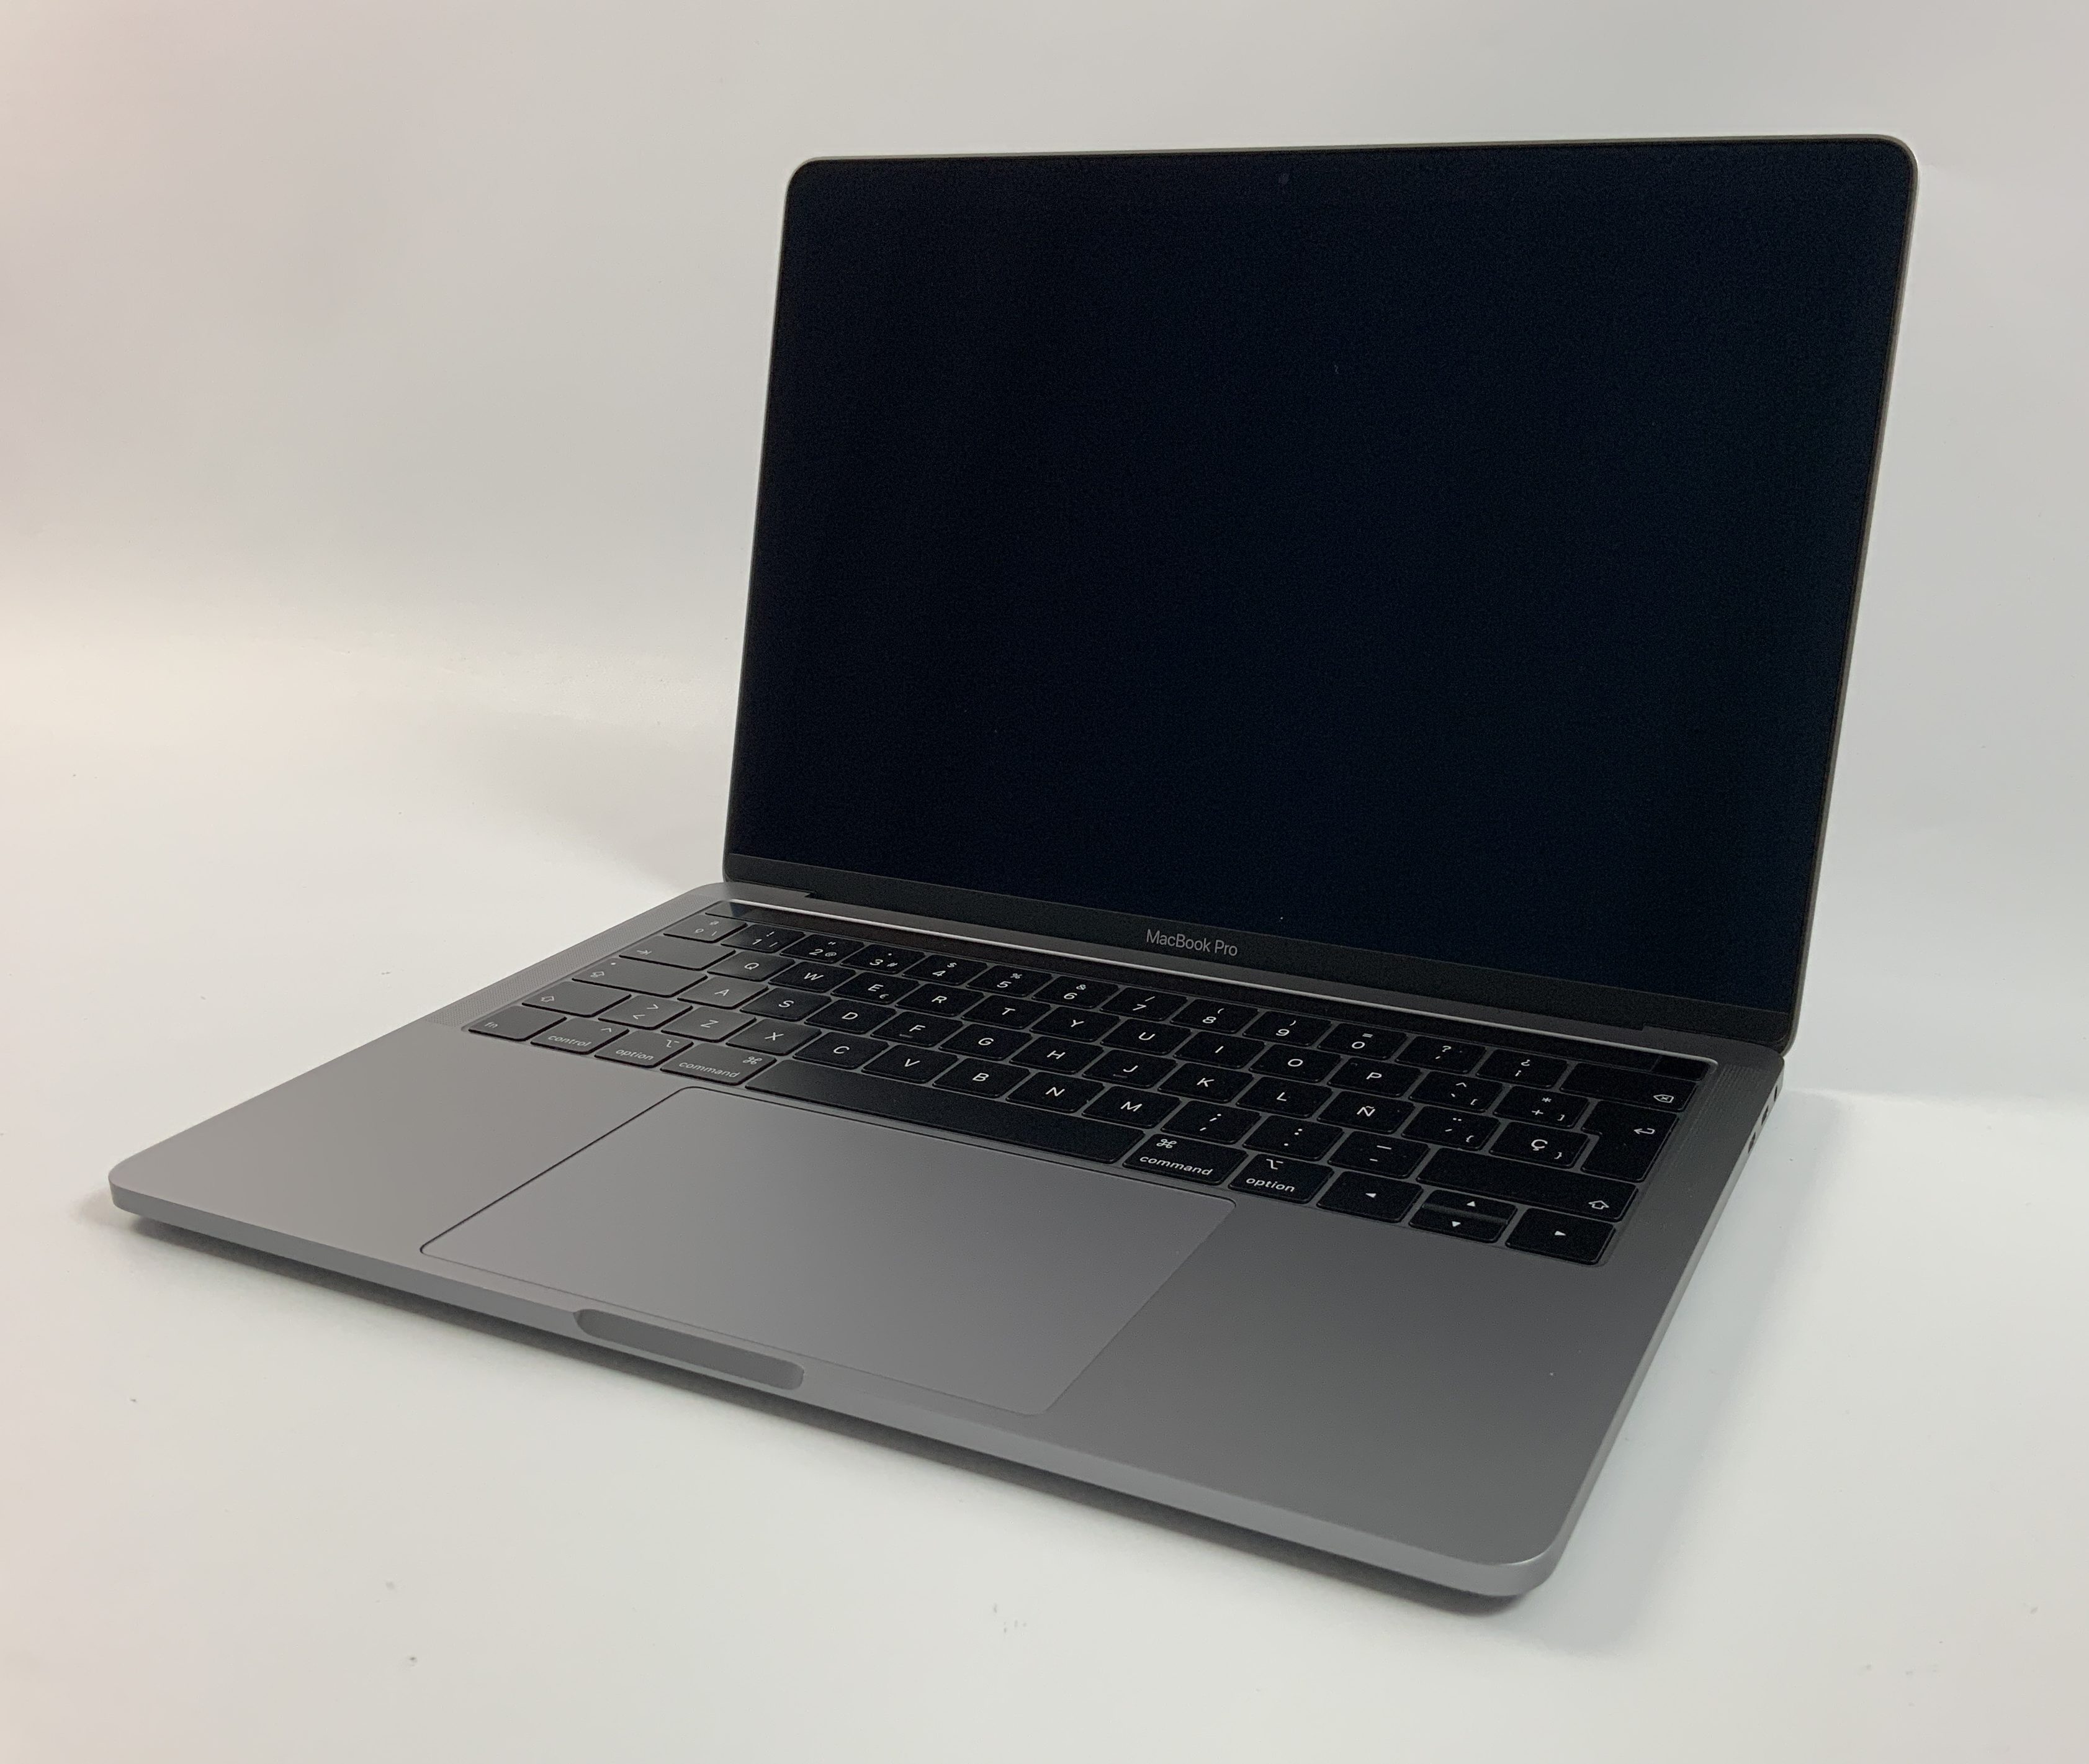 MacBook Pro 13" 4TBT Mid 2018 (Intel Quad-Core i5 2.3 GHz 8 GB RAM 512 GB SSD), Space Gray, Intel Quad-Core i5 2.3 GHz, 8 GB RAM, 512 GB SSD, Kuva 1